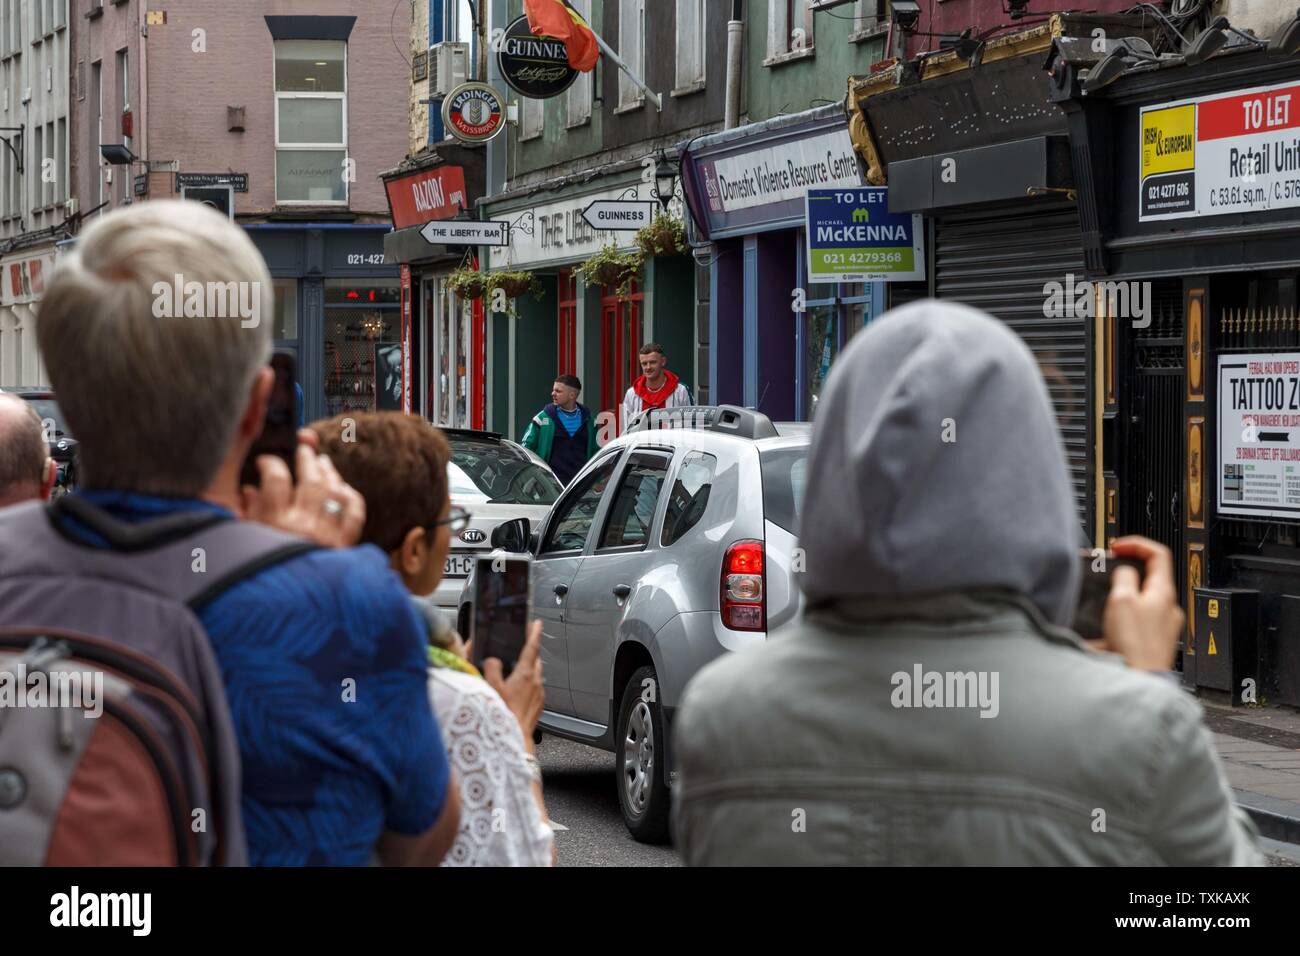 Cork, Irlande, 21 juin 2019. Les jeunes délinquants de tournage sur North Main Street, Cork City. Les jeunes délinquants étaient en train de filmer à nouveau aujourd'hui, cette fois dans la Shakedog diner dans la rue Principale Nord. Credit : Damian Coleman. Banque D'Images